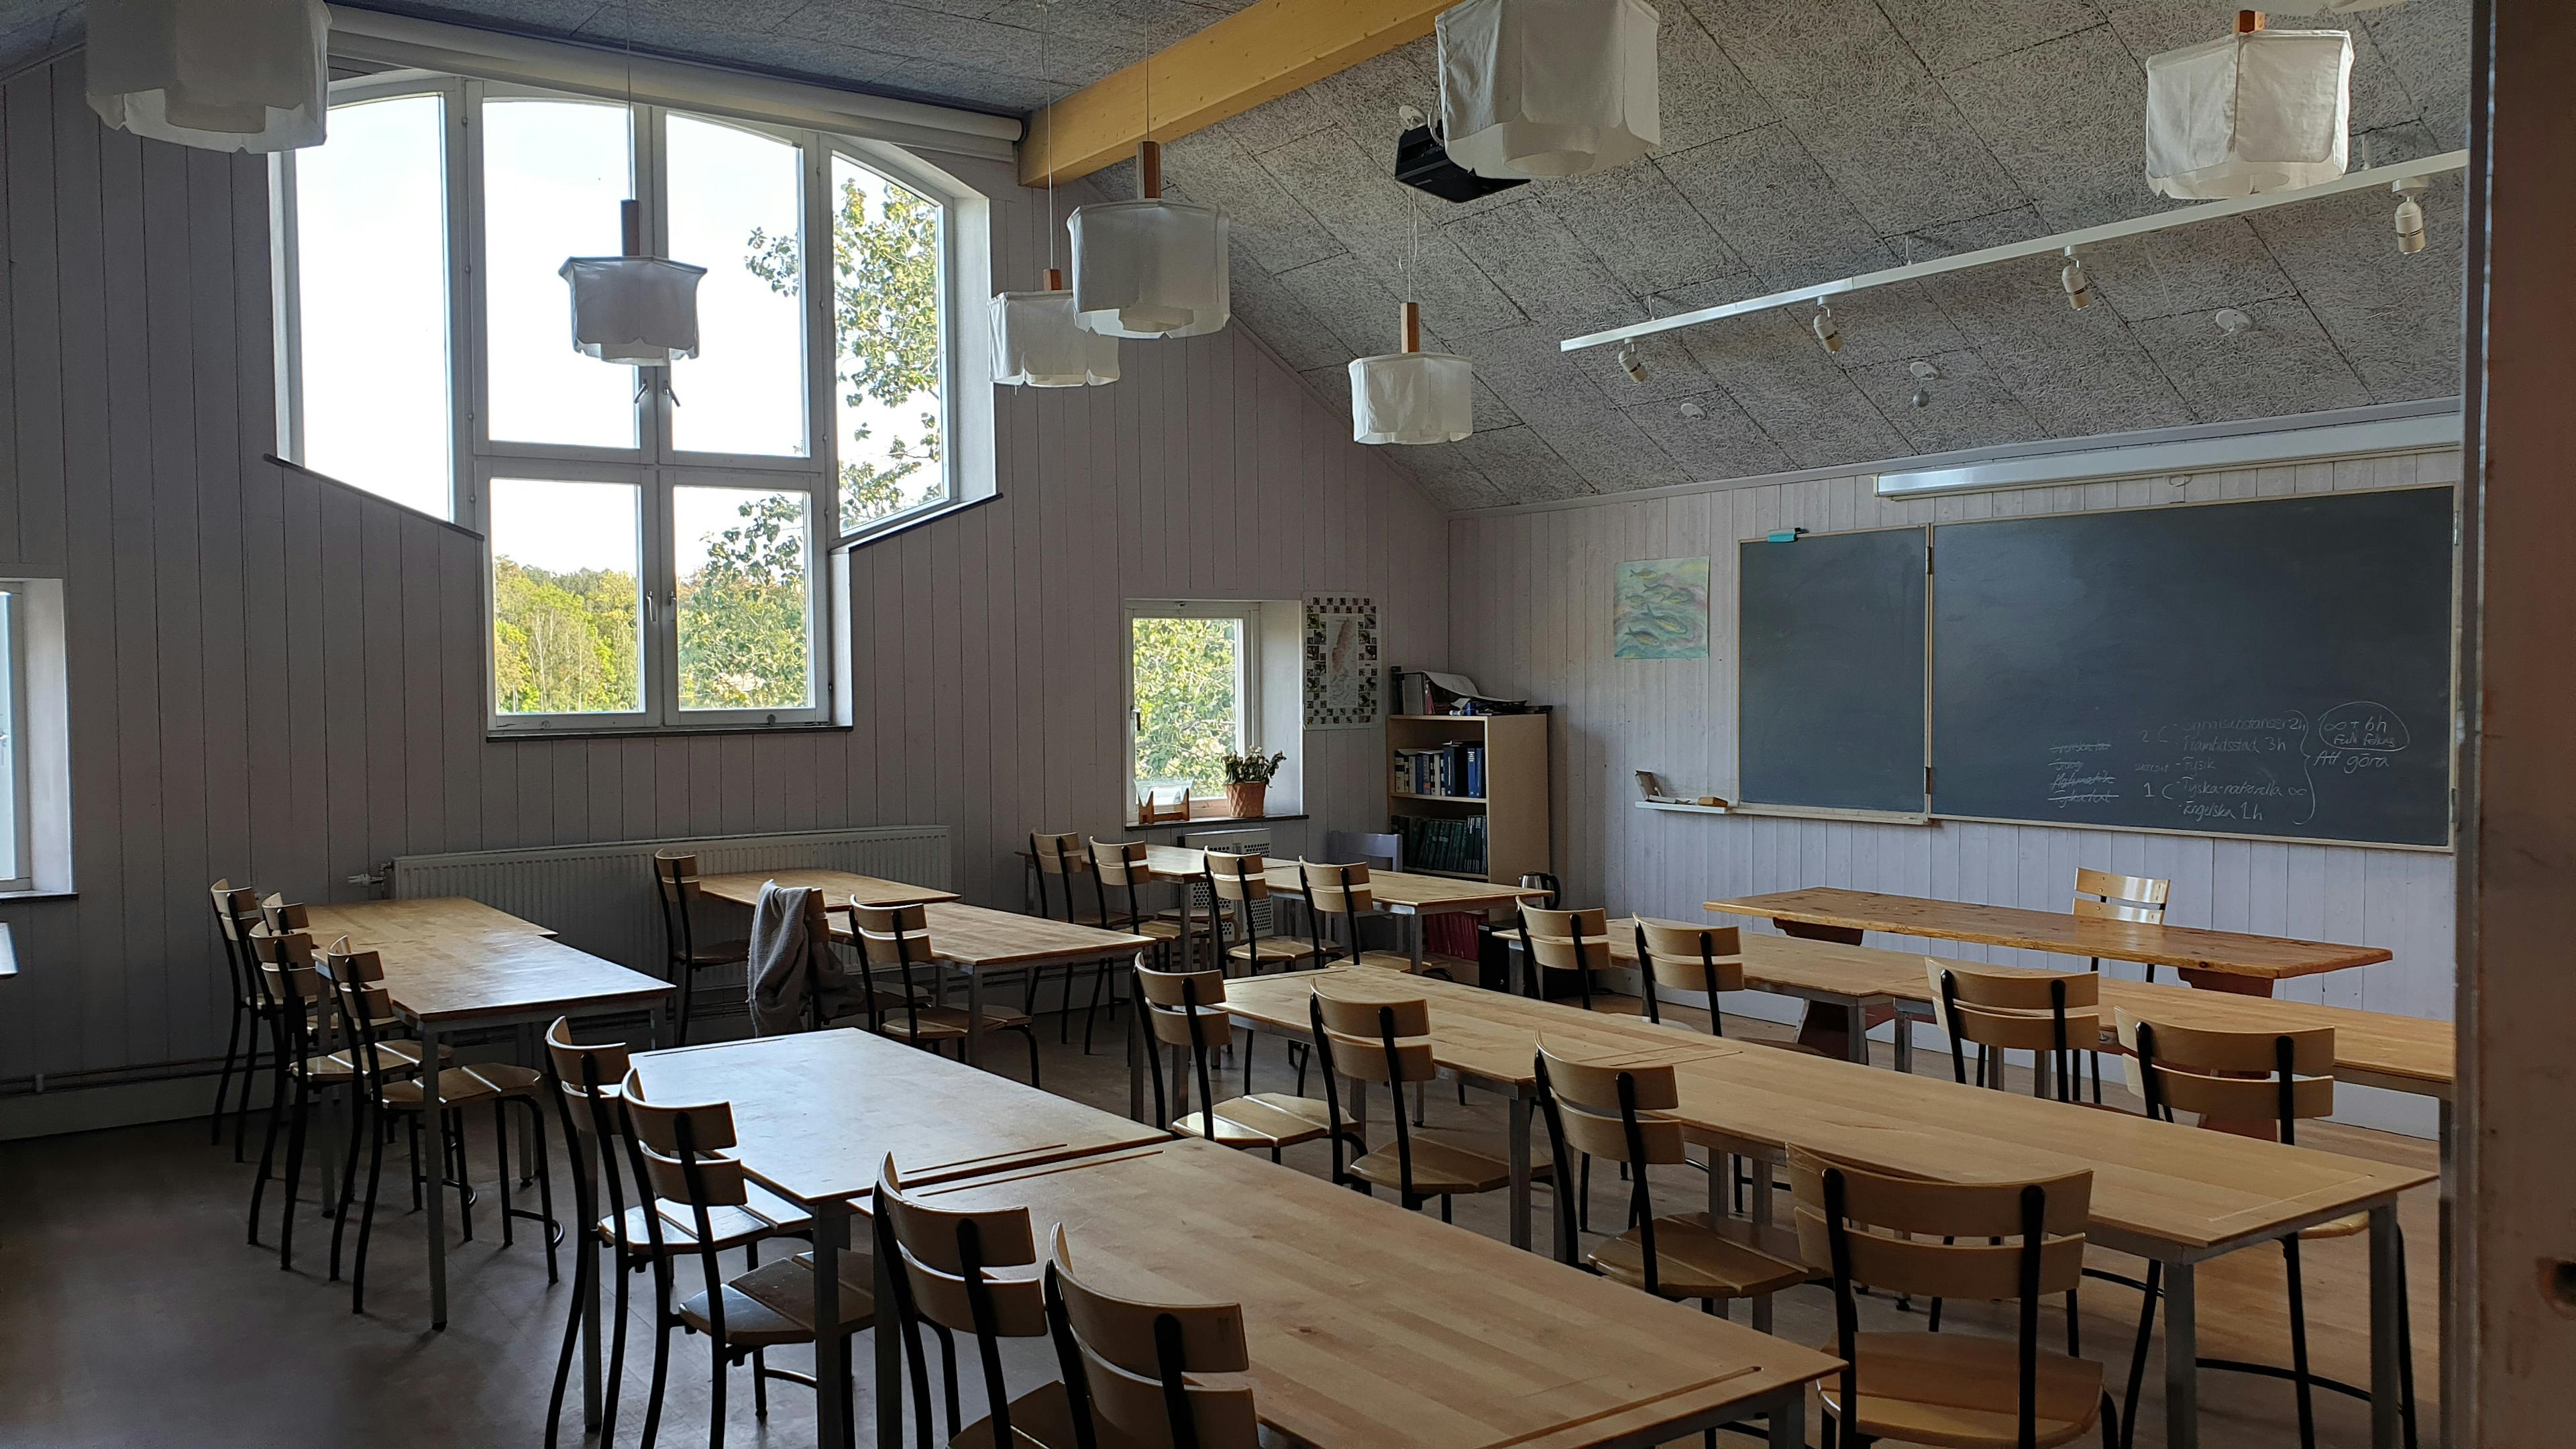 Klassrum i Örjanskolan